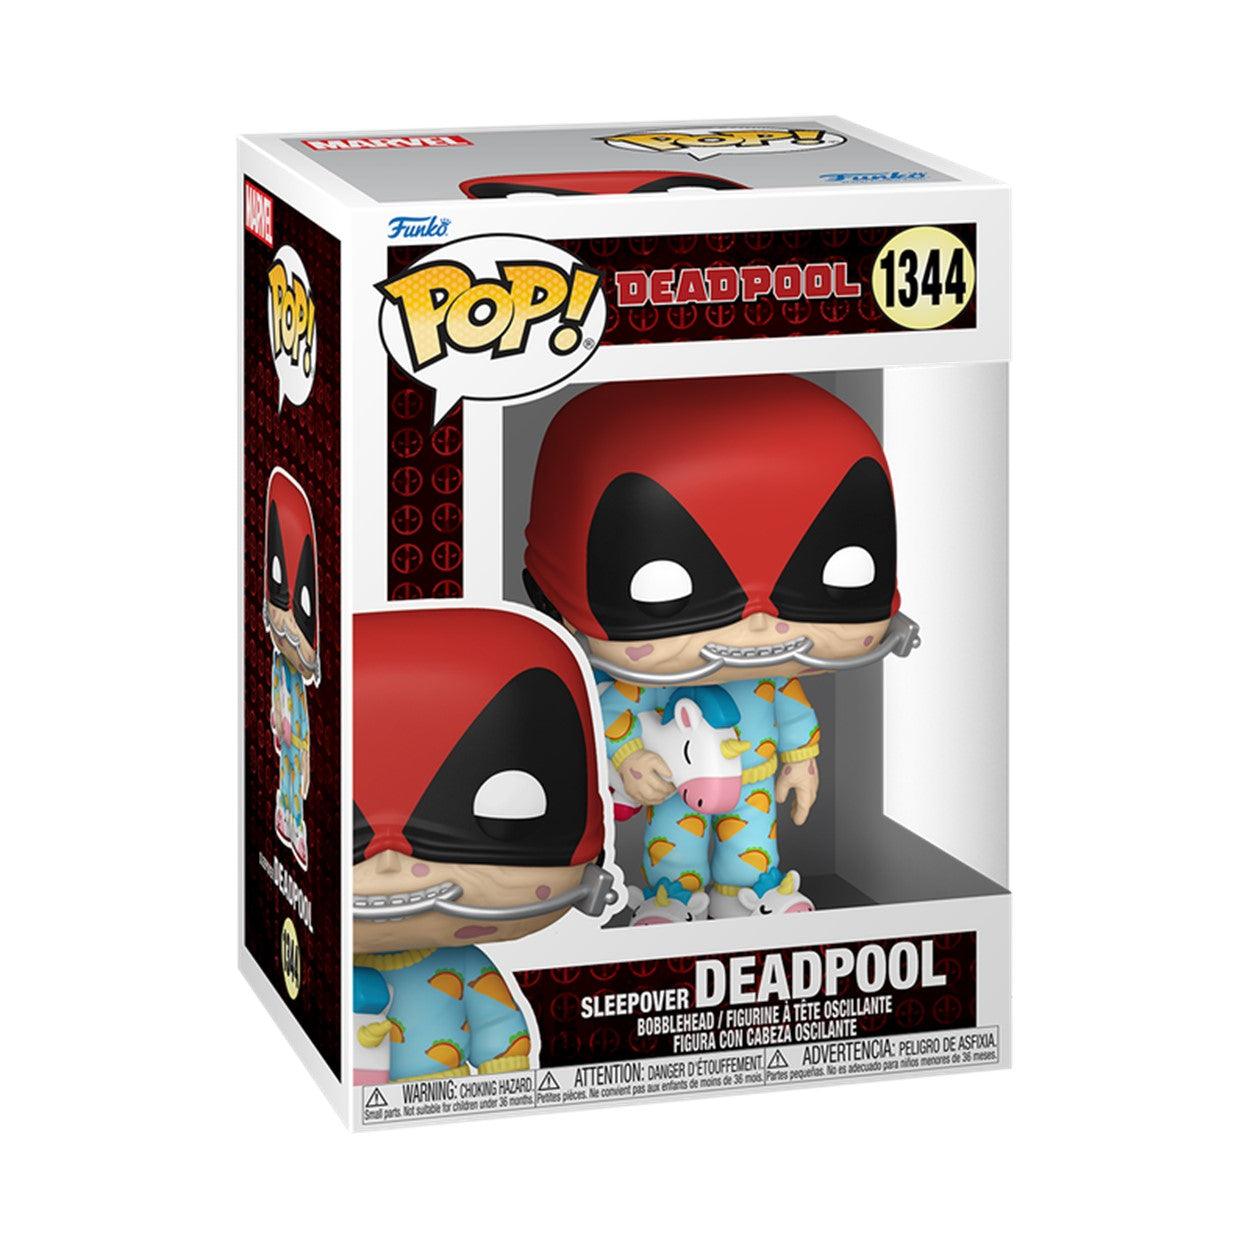 Pop! Marvel - Deadpool - Sleepover Deadpool - #1344 - Hobby Champion Inc